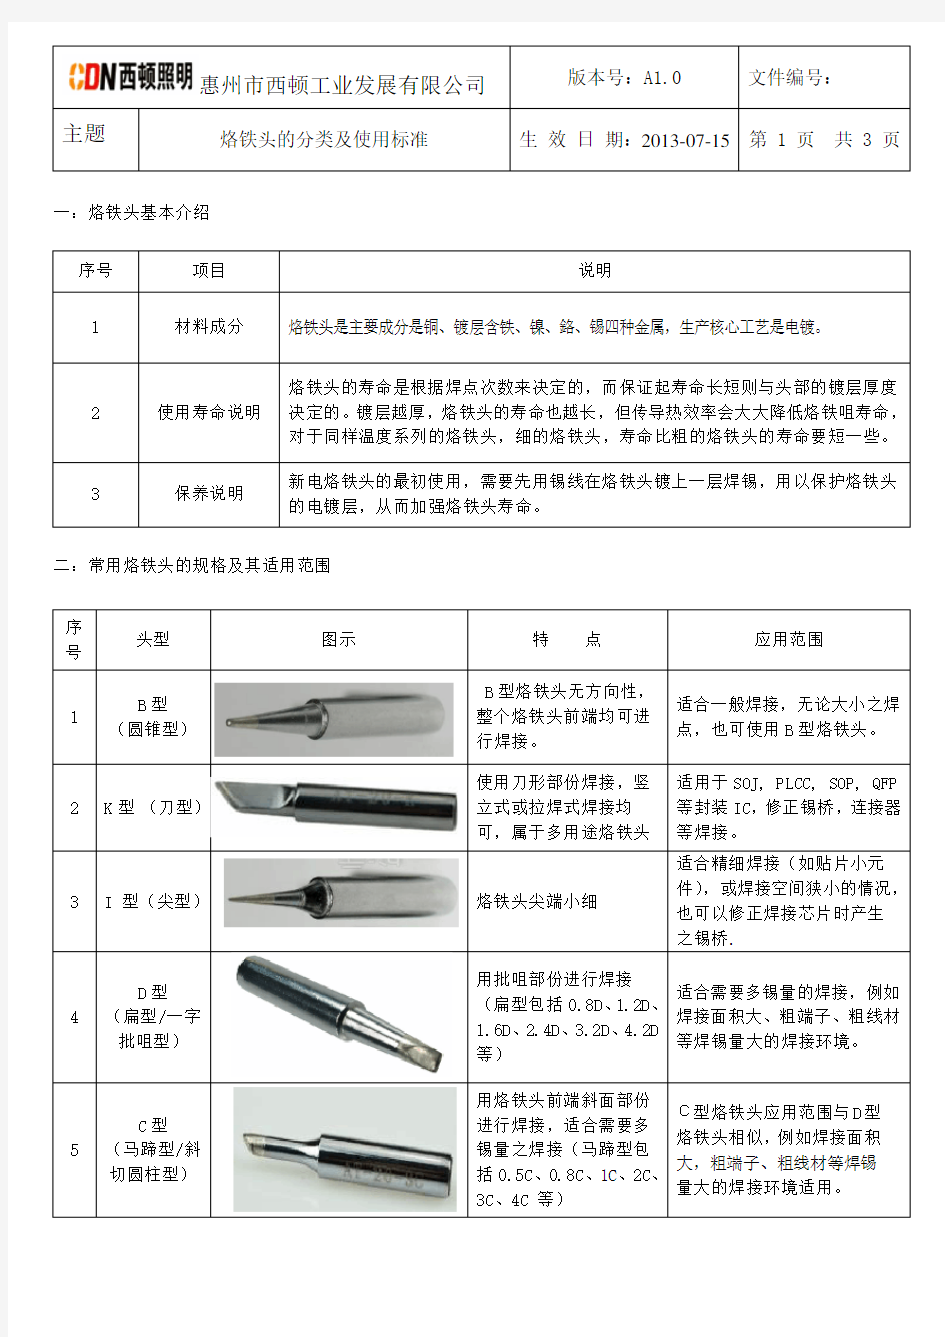 烙铁头的分类及使用标准(2013.7.15)